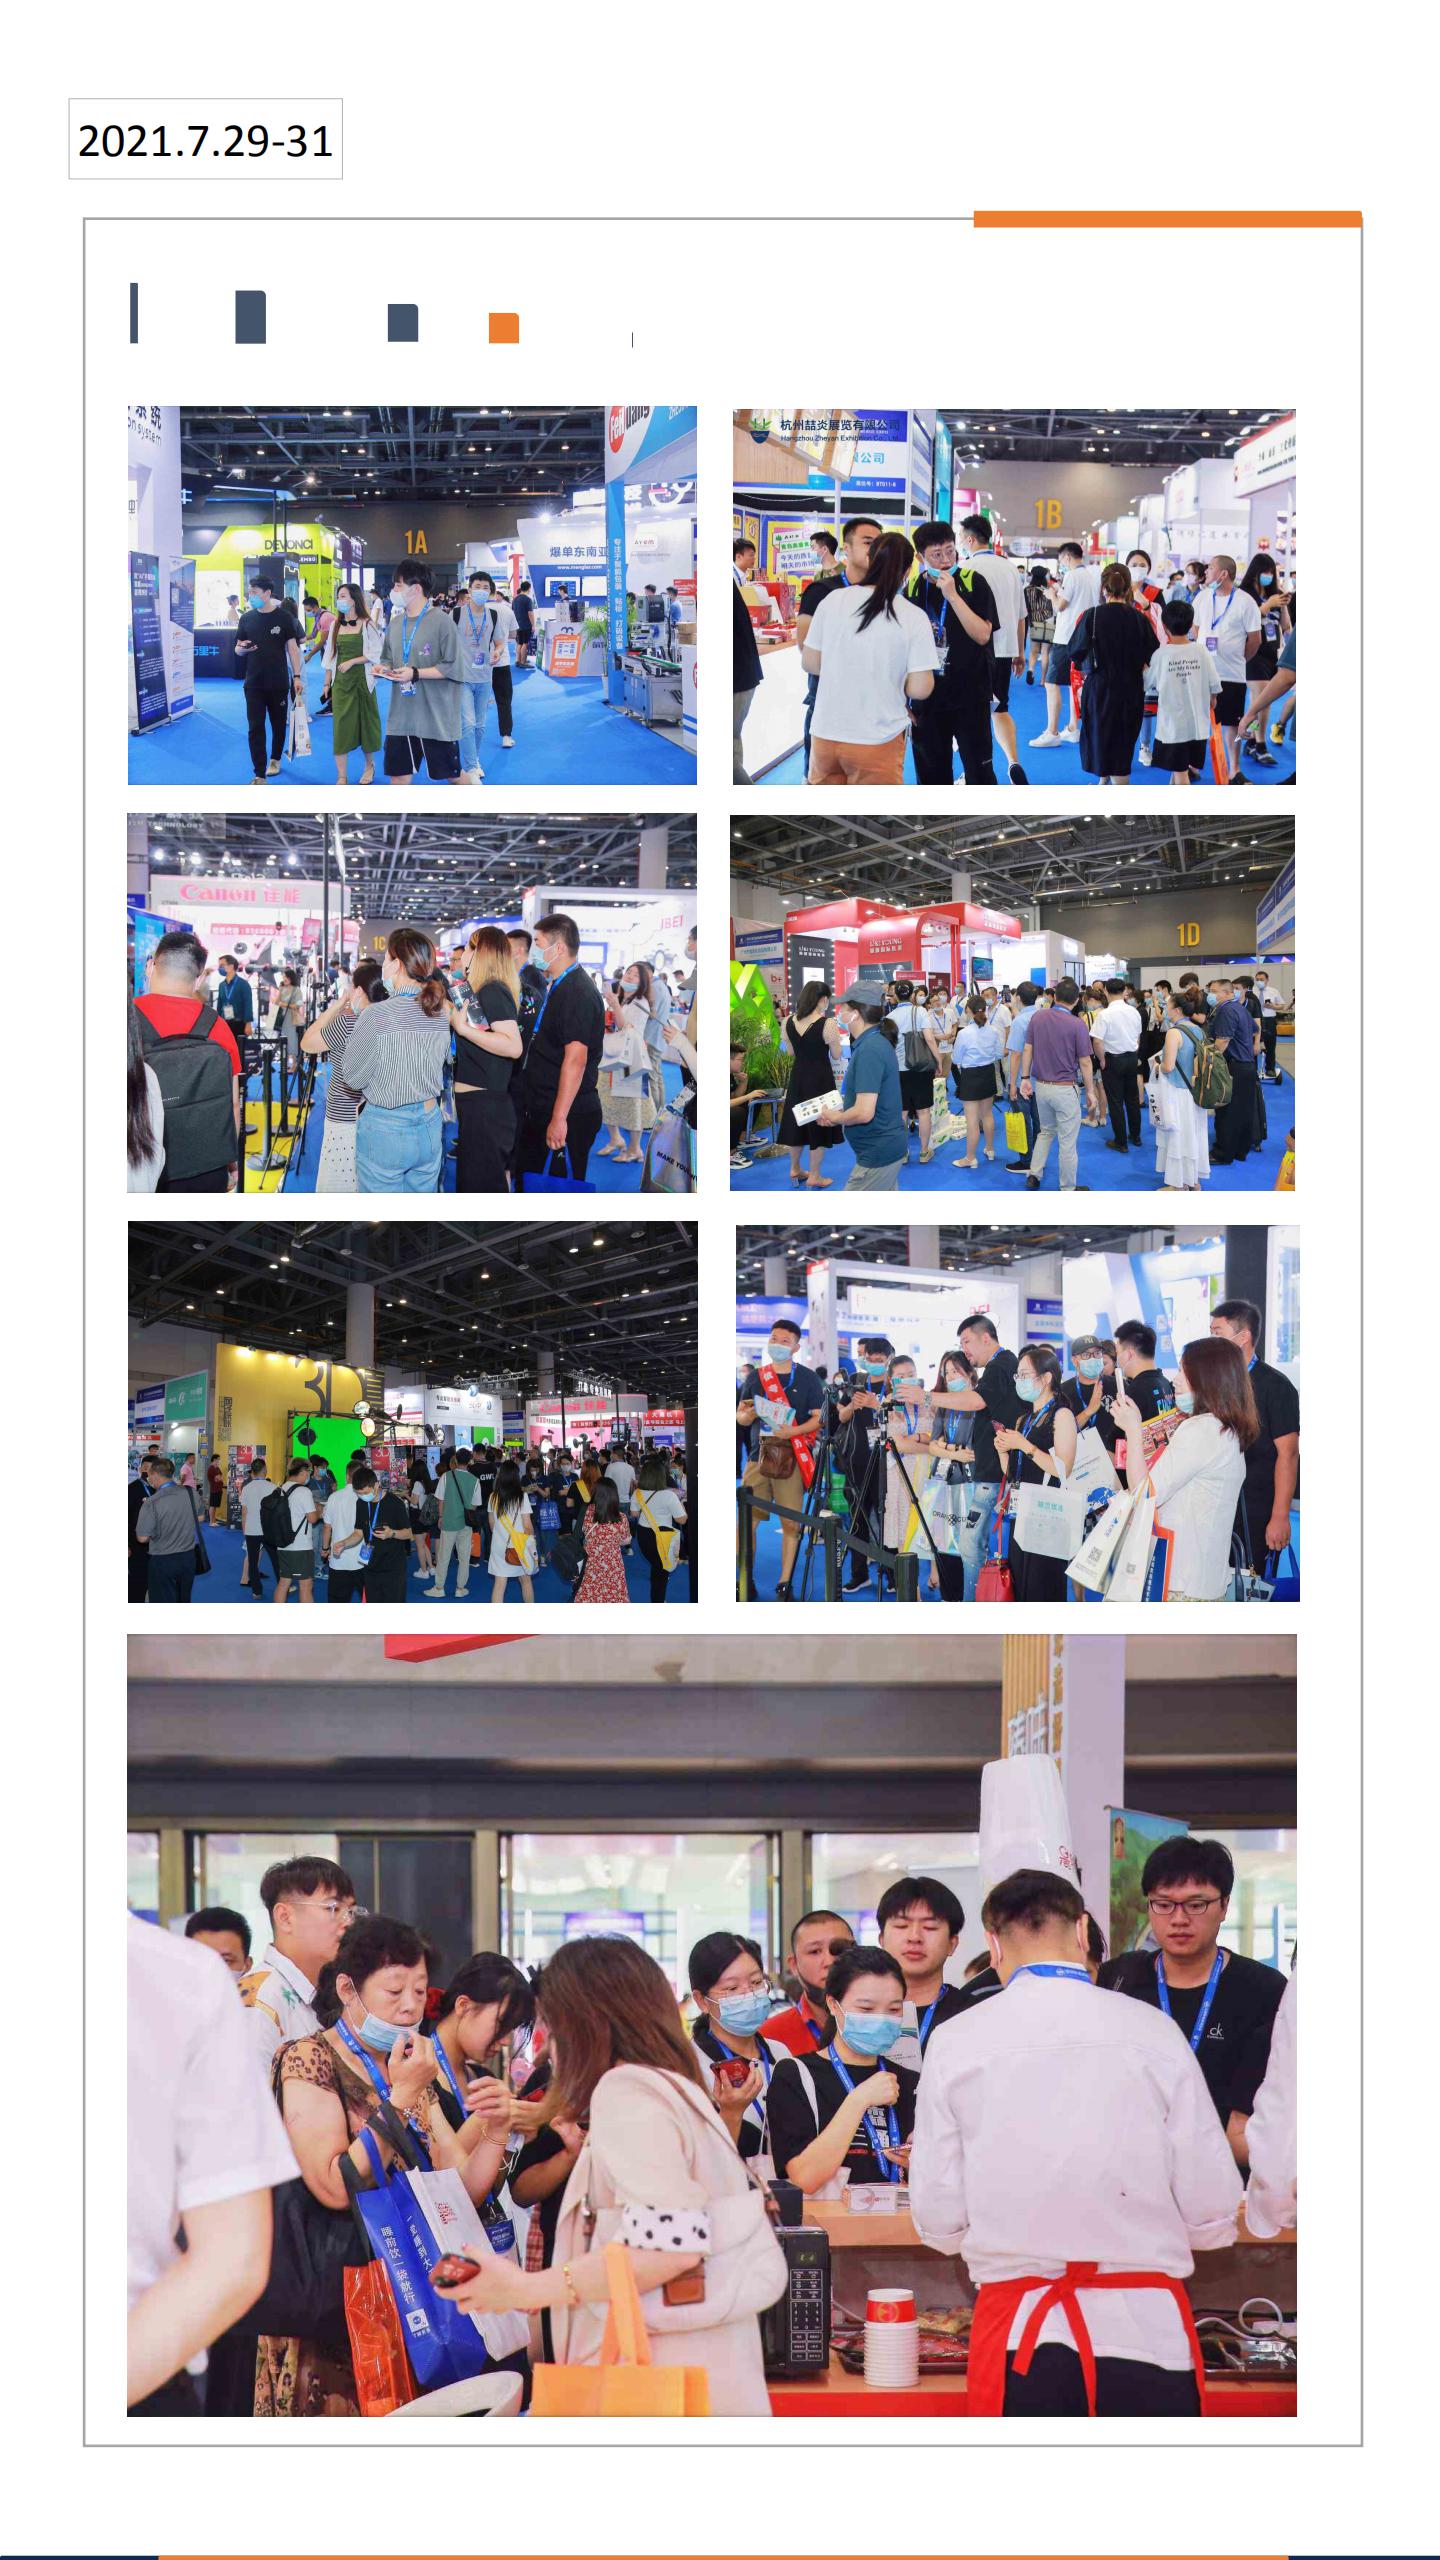 2022第十一届（杭州）全球新电商博览会